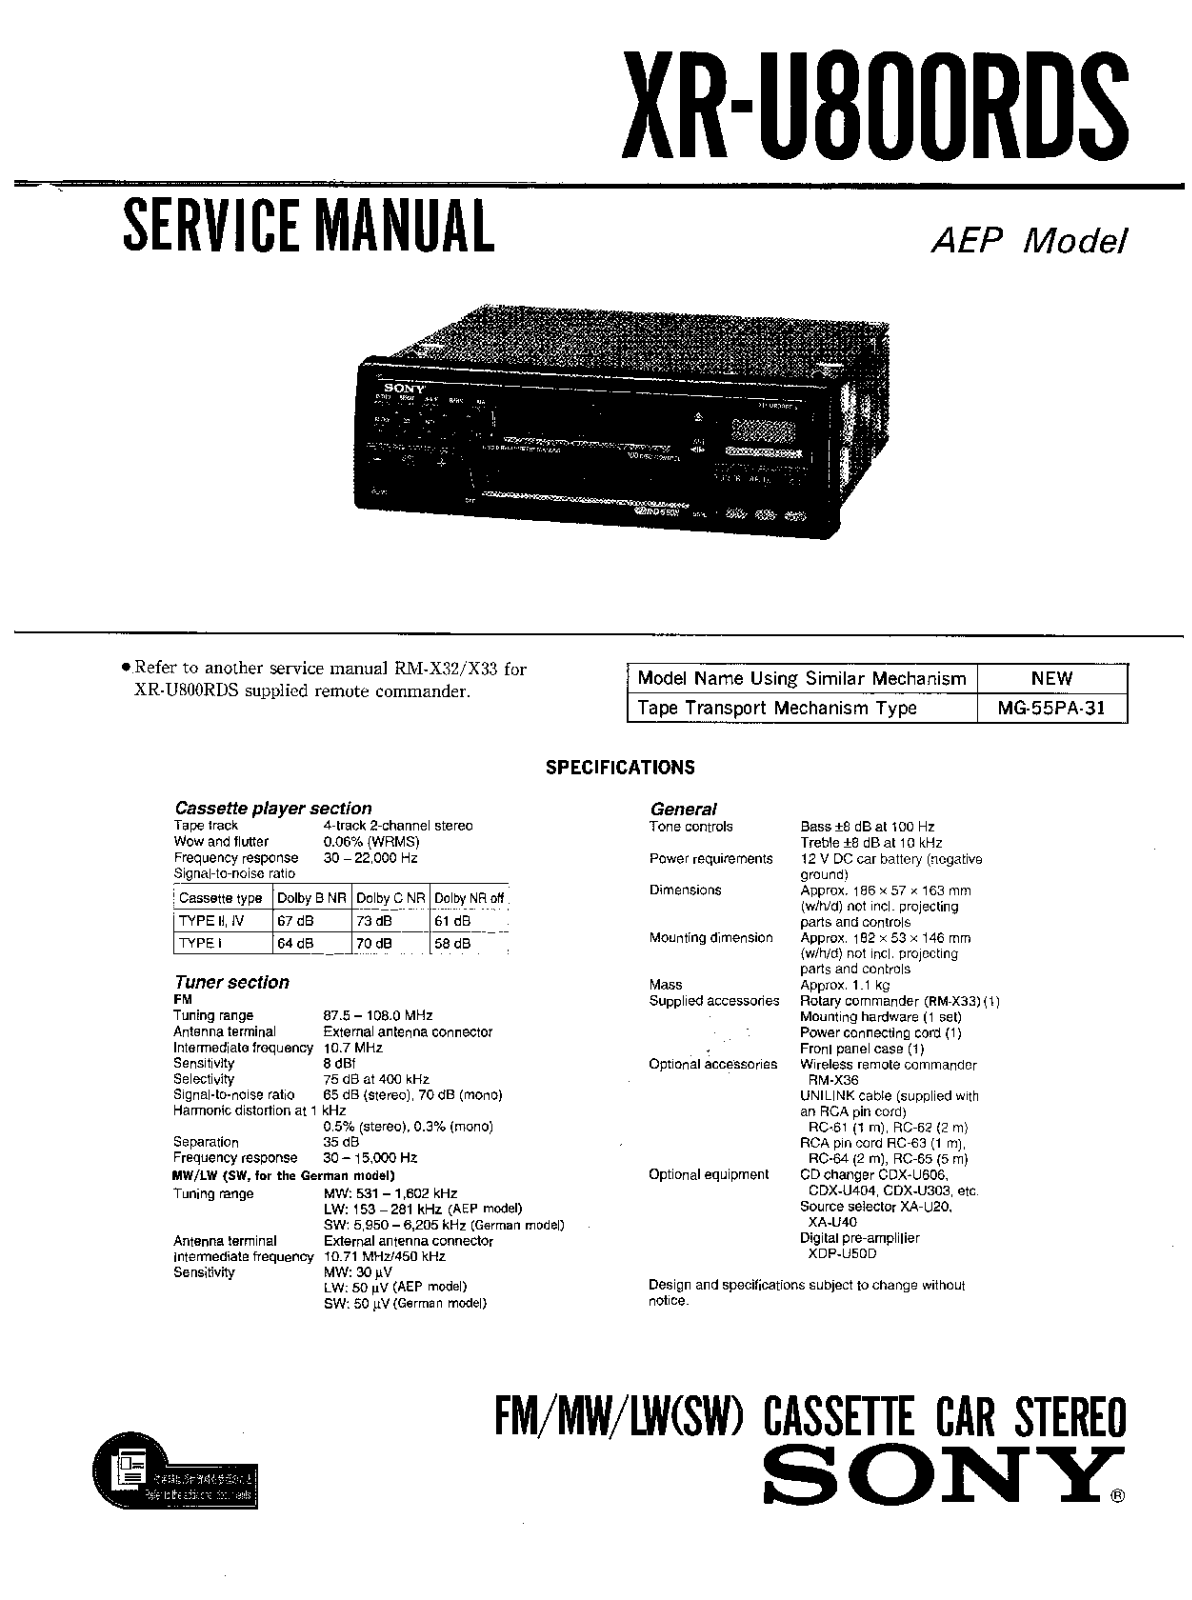 Sony XR-U800RDS Service Manual